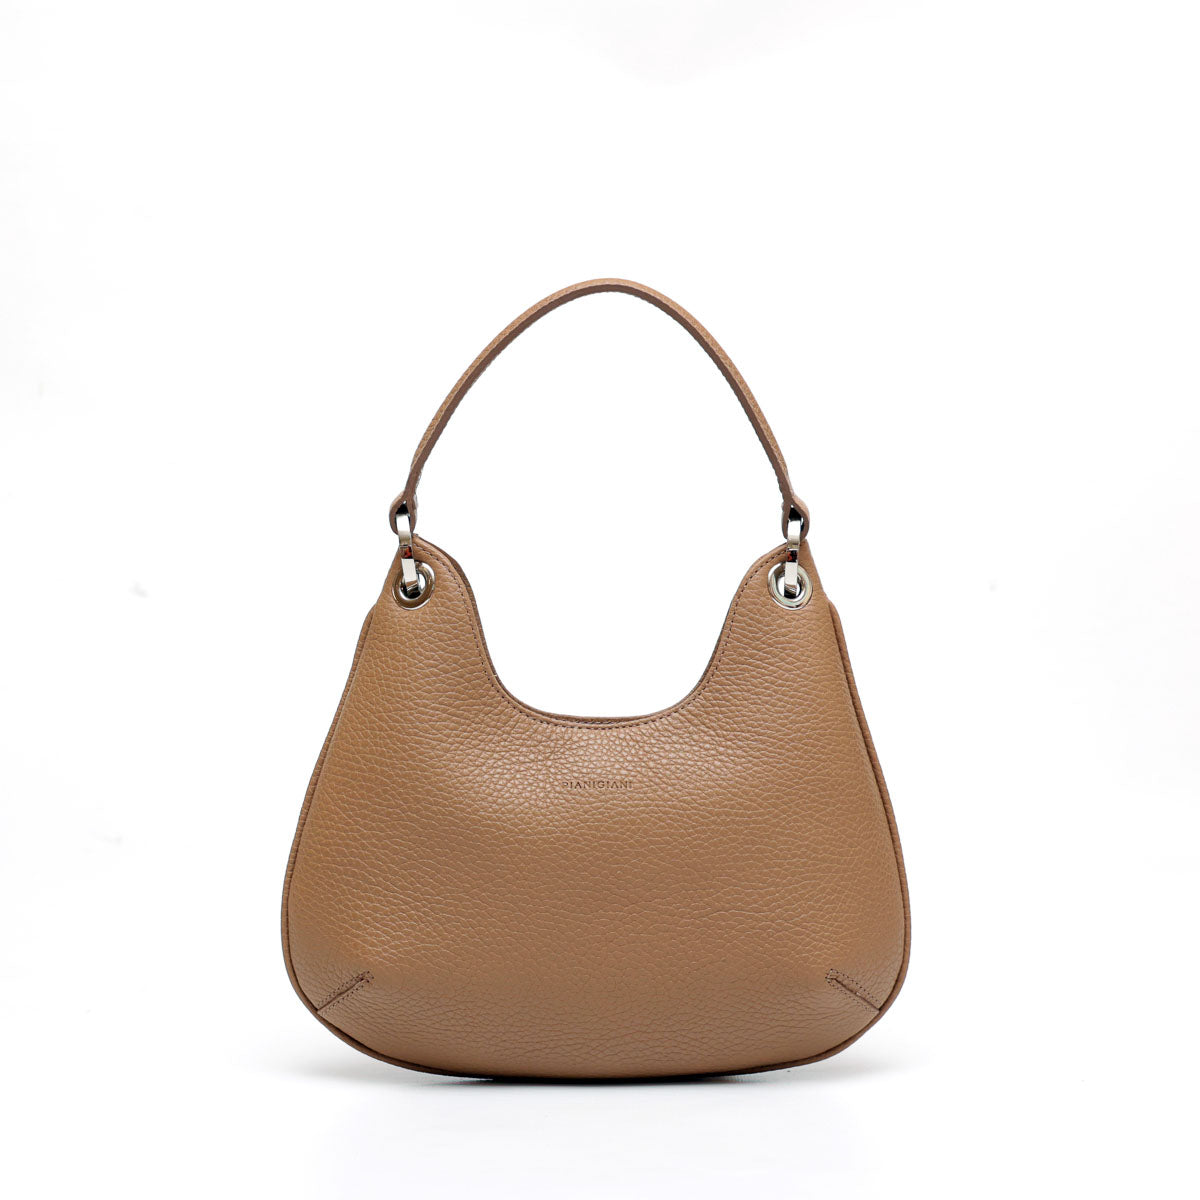 Mini  Lou bag - borsa da donna in pelle taupe, modello a mano con tracolla by Pianigiani